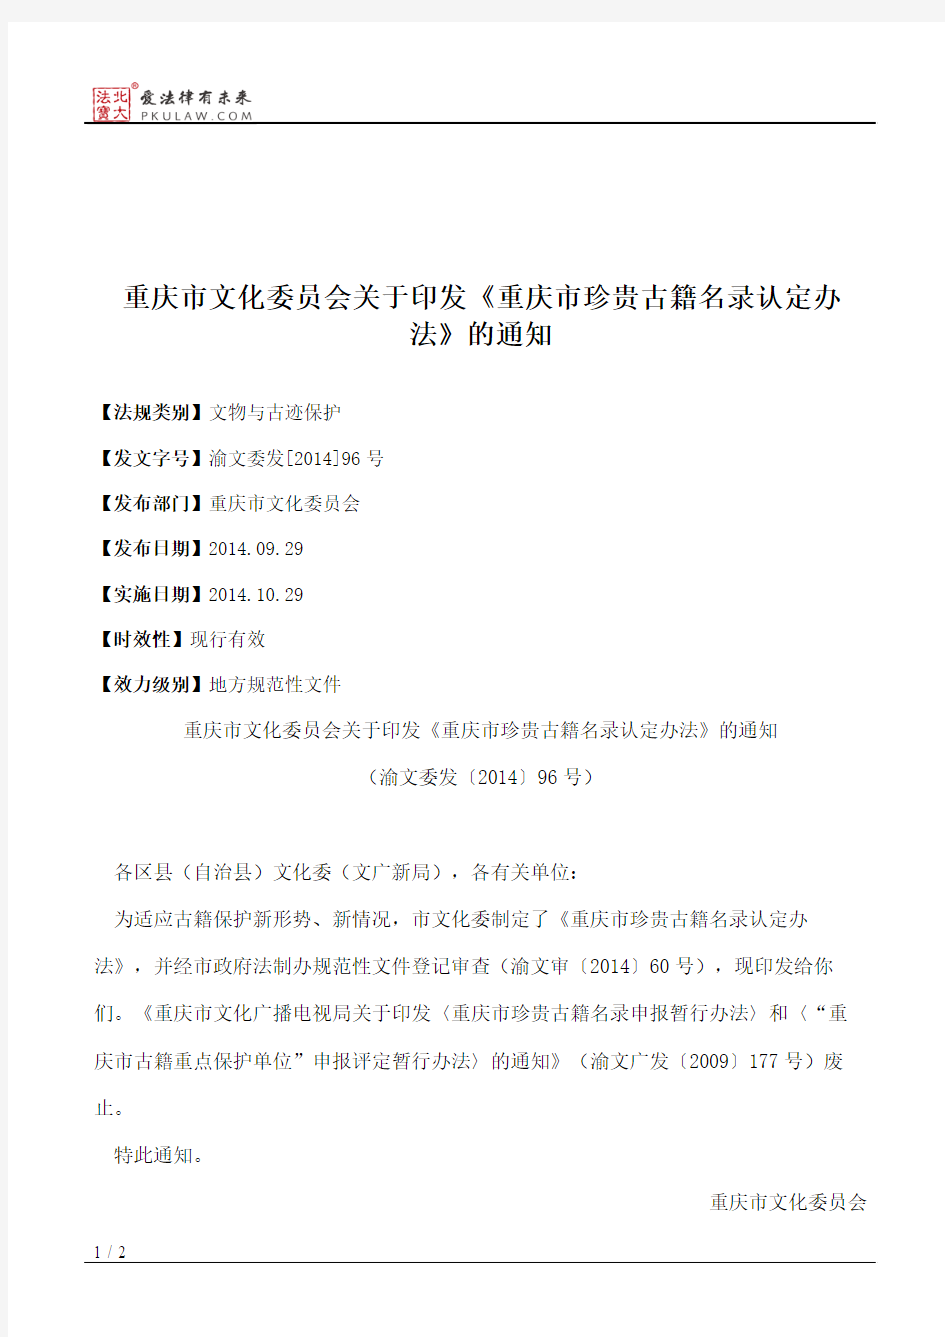 重庆市文化委员会关于印发《重庆市珍贵古籍名录认定办法》的通知